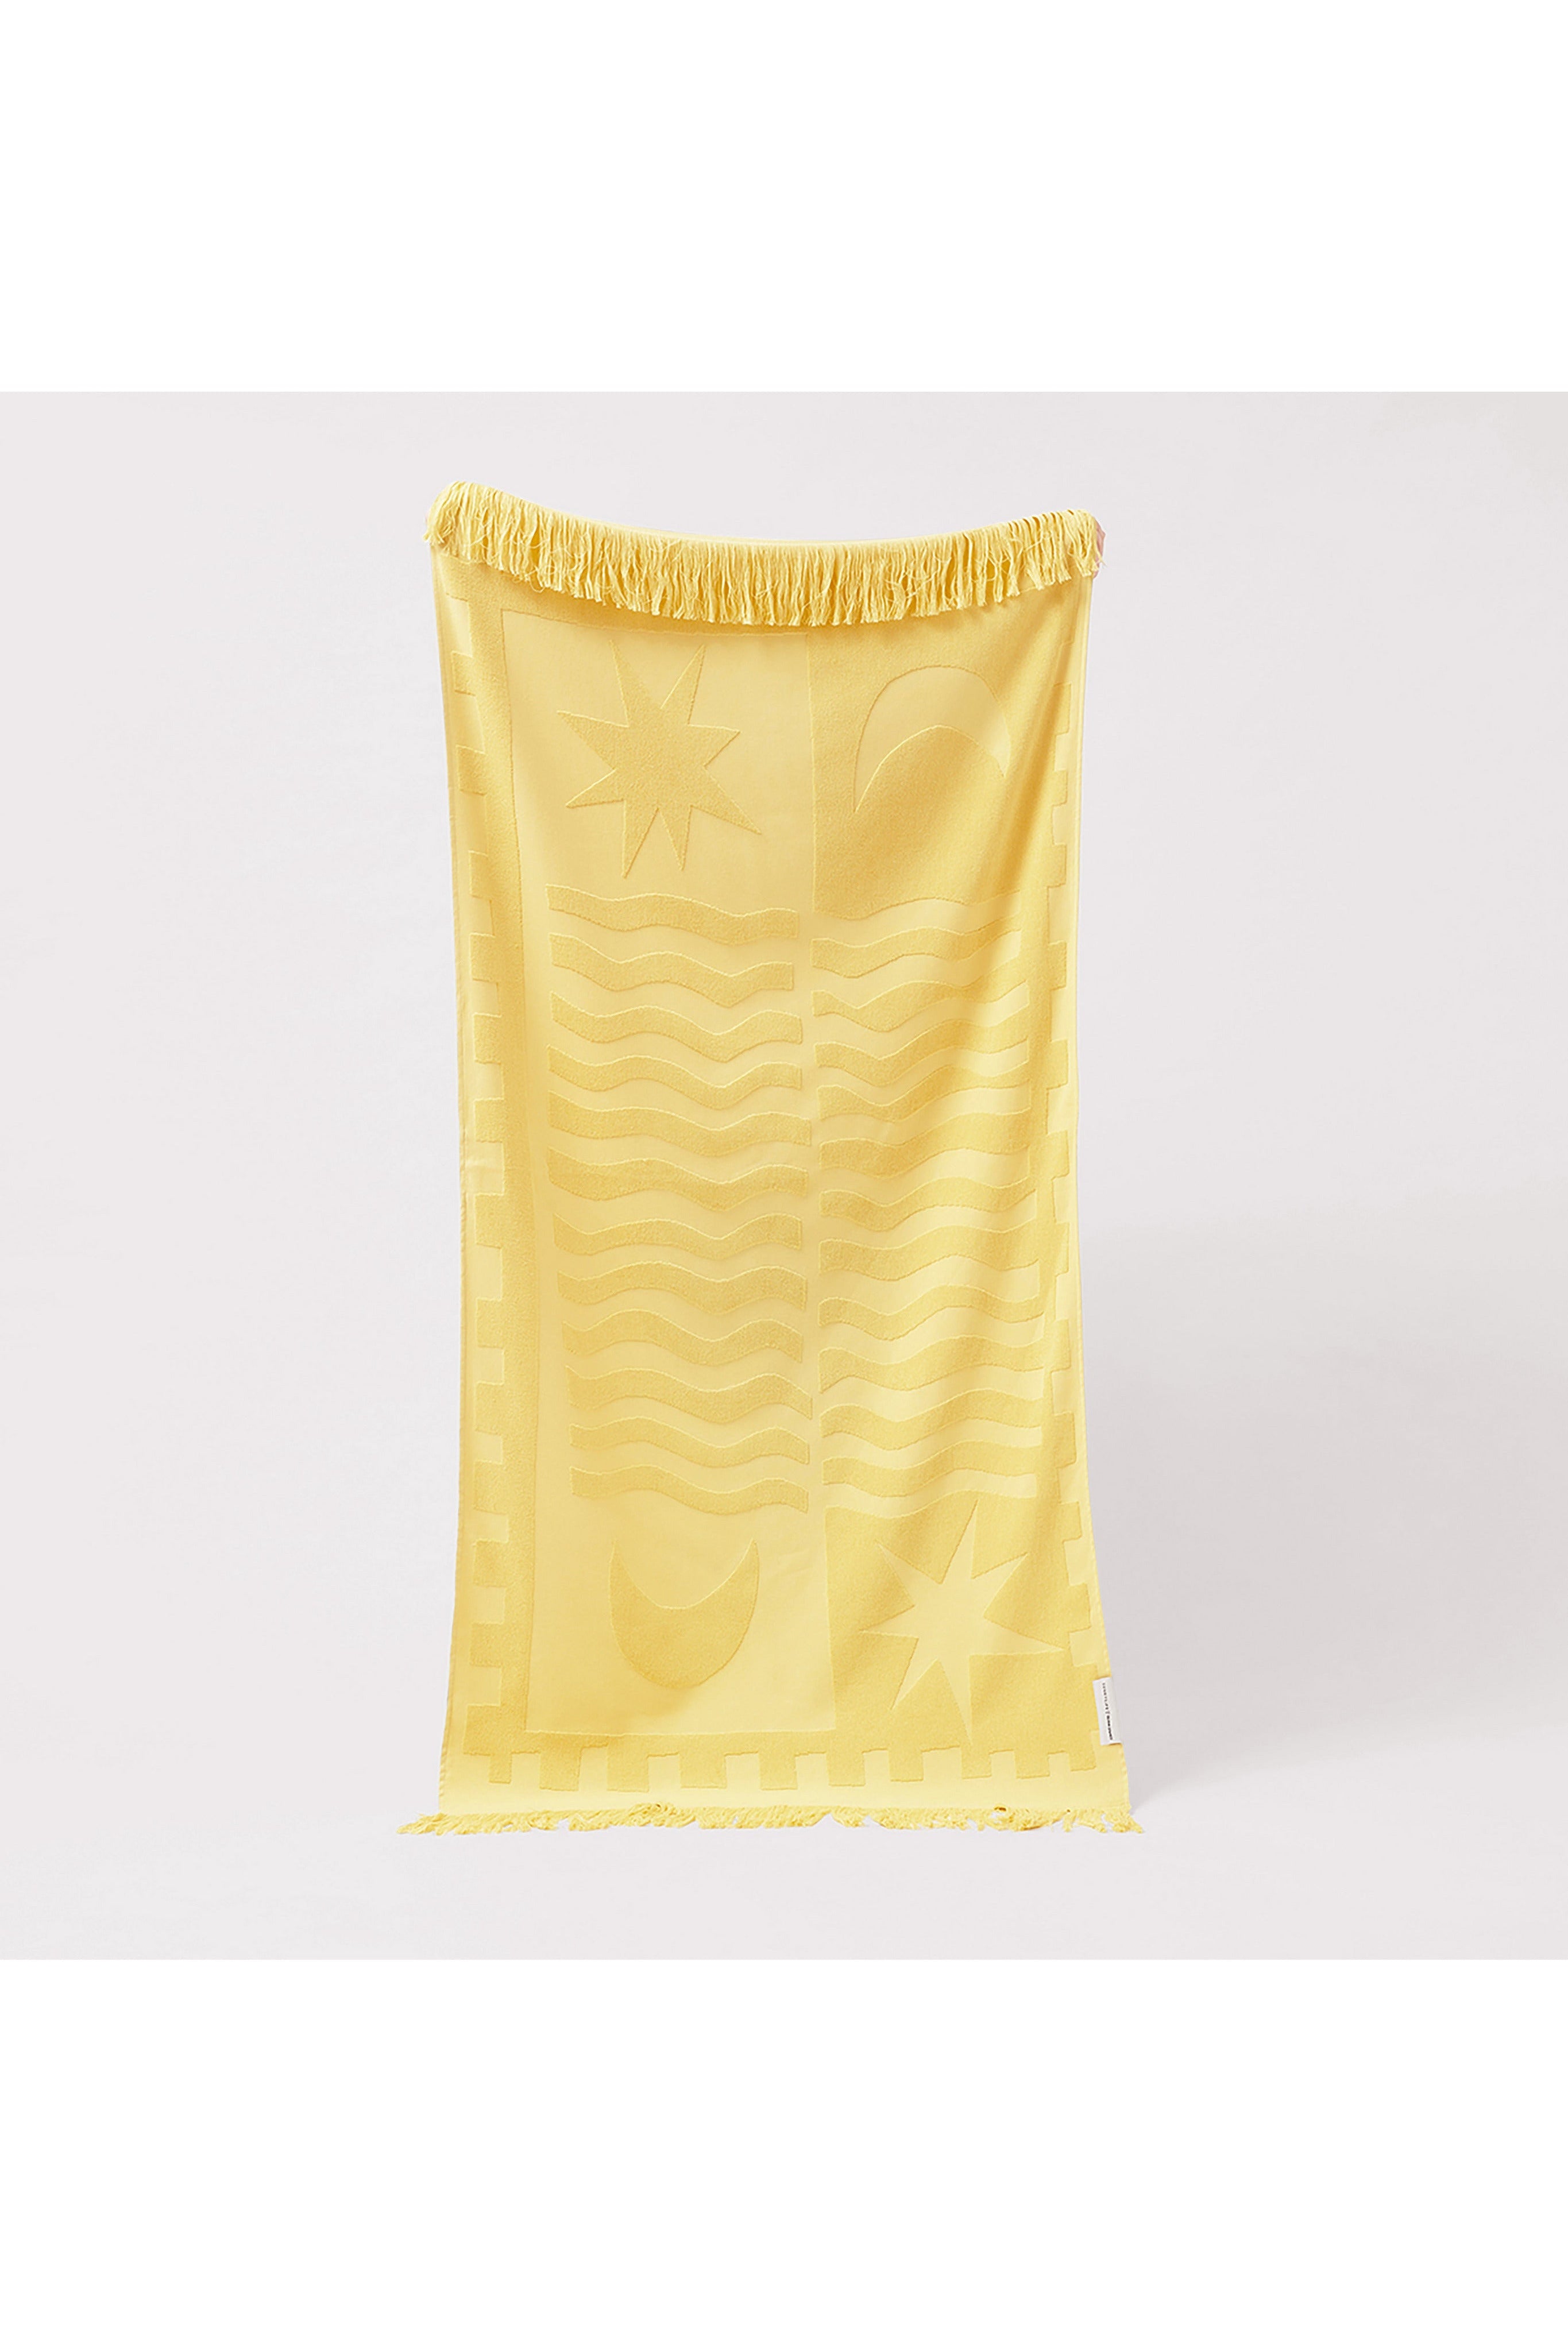 Luxe Towel - Skinny Dipper